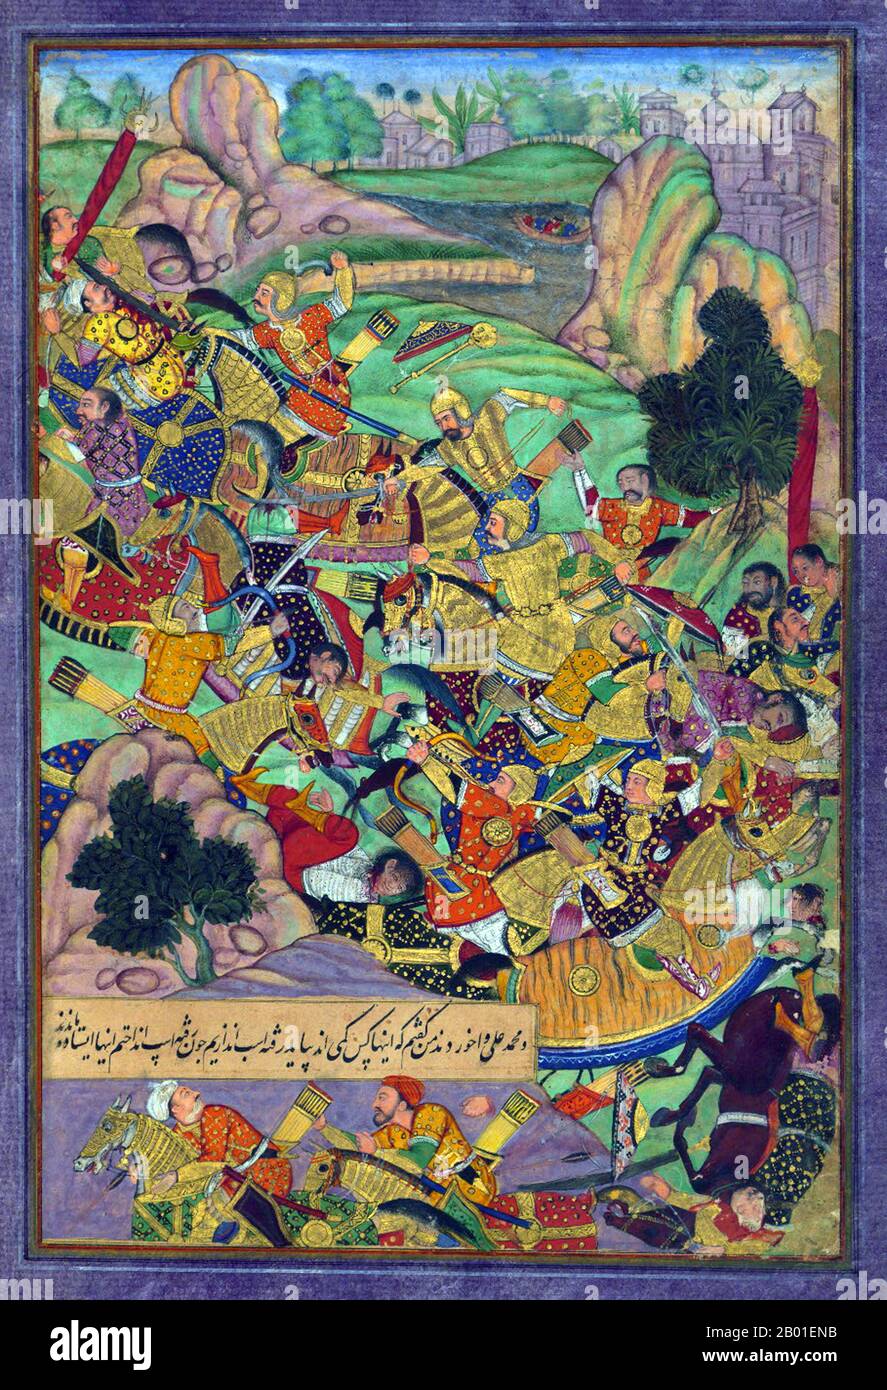 Indien: Zahir ud-din Muhammad Babur (1483-1531), der erste Mogul-Kaiser, stellt sich seinen Feinden. Miniaturgemälde aus dem Baburnama, 16. Jahrhundert. Bāburnāma (wörtlich: "Buch von Babur" oder "Briefe von Babur"; auch bekannt als Tuzk-e Babri) ist der Name, der den Memoiren von Ẓahīr ud-Dīn Muḥammad Bābu, Gründer des Mogul-Reiches und Ururururenkel von Timur, gegeben wurde. Es handelt sich um ein autobiographisches Werk, ursprünglich in der Sprache Chagatai geschrieben, das Babur als „Turki“ (d. h. Turkisch), die gesprochene Sprache der Andischan-Timuriden, bekannt ist. Stockfoto